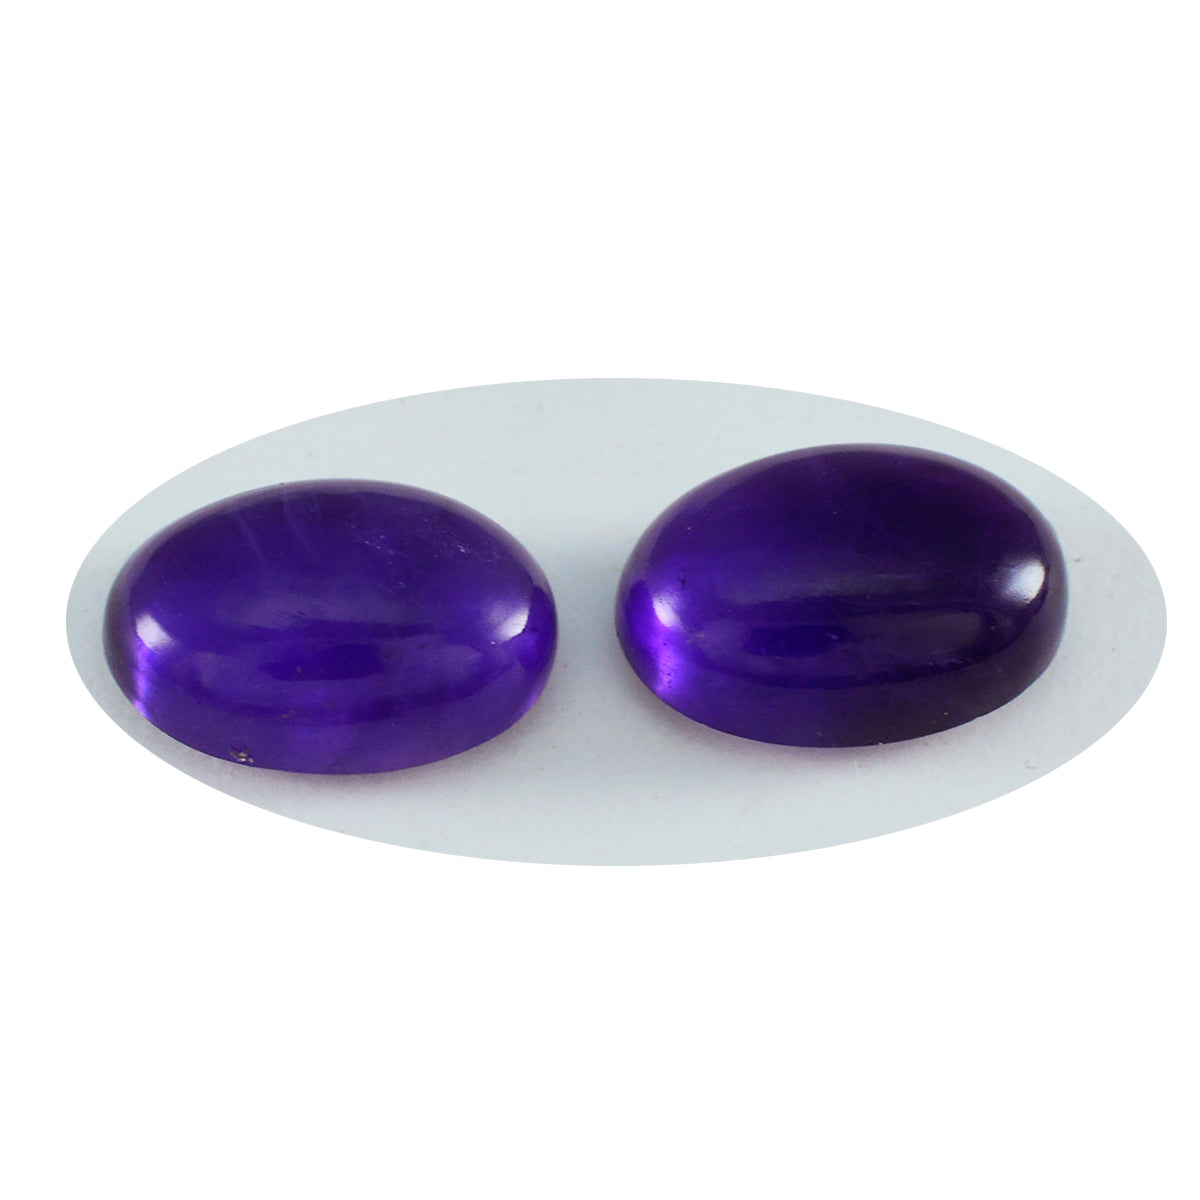 Riyogems 1PC Purple Amethyst Cabochon 12x16 mm Oval Shape pretty Quality Gemstone